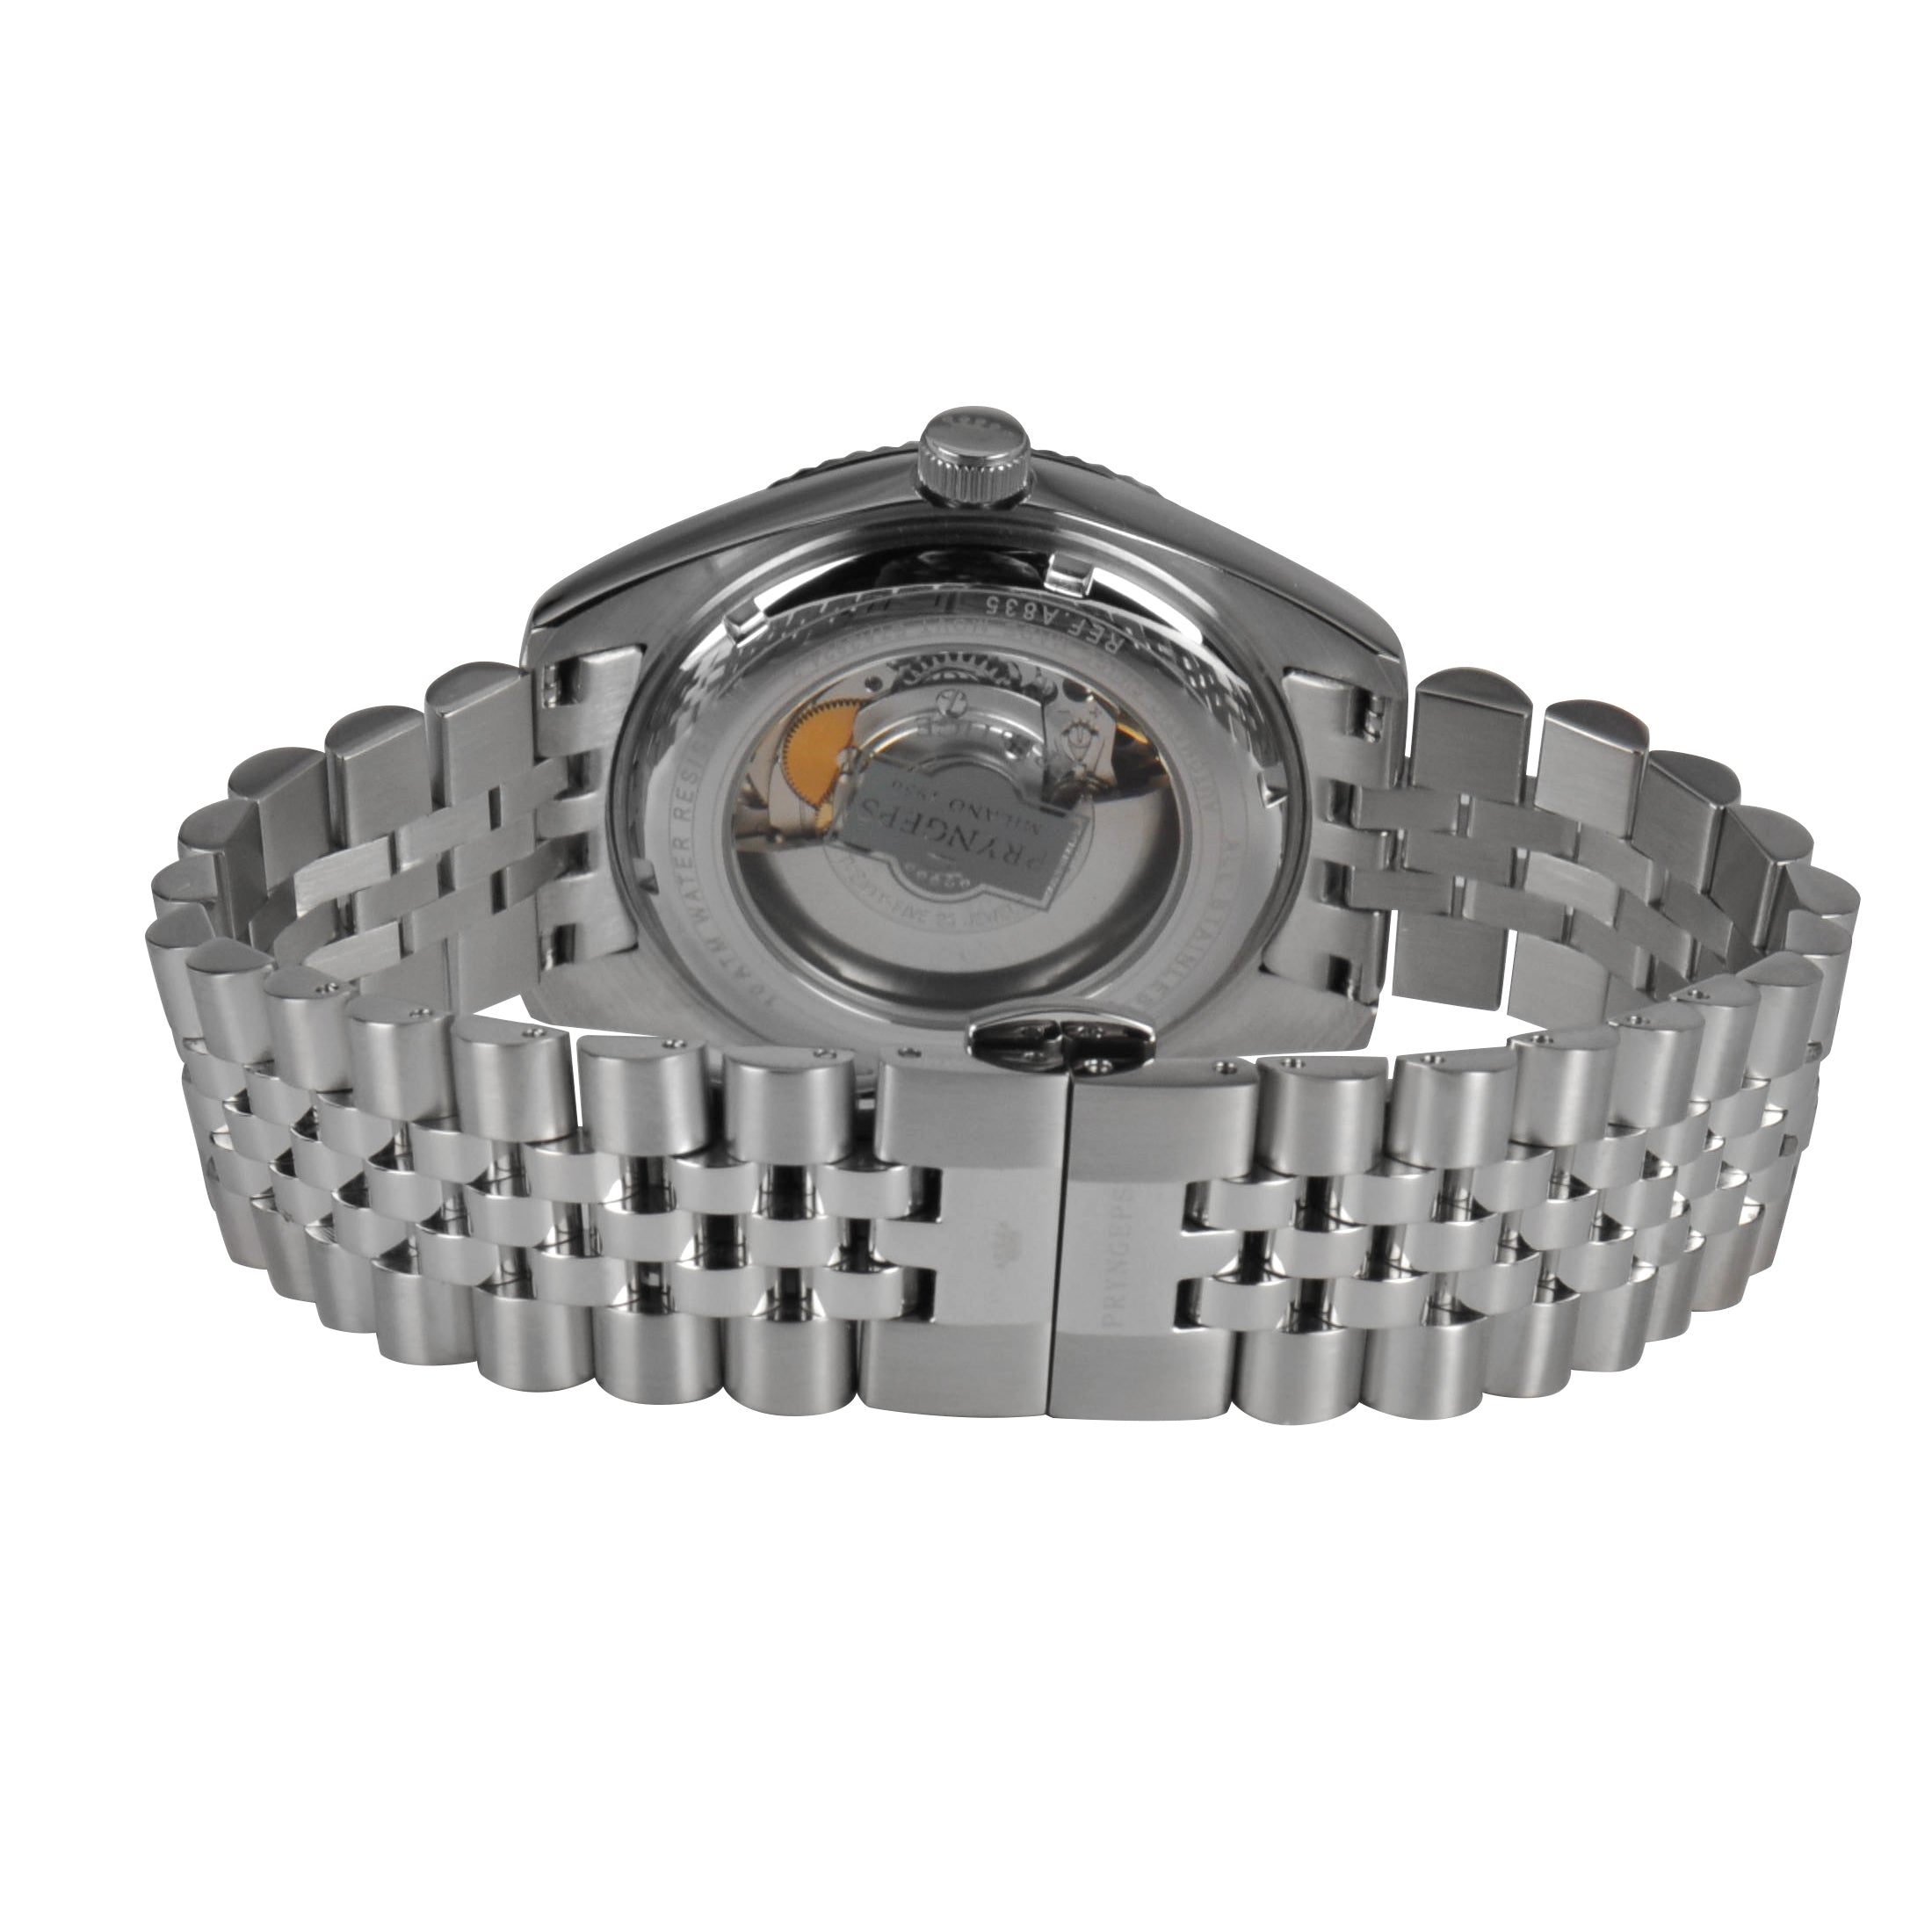 Pryngeps orologio uomo RX Collection 40mm movimento automatico svizzero acciaio A835 - Gioielleria Capodagli